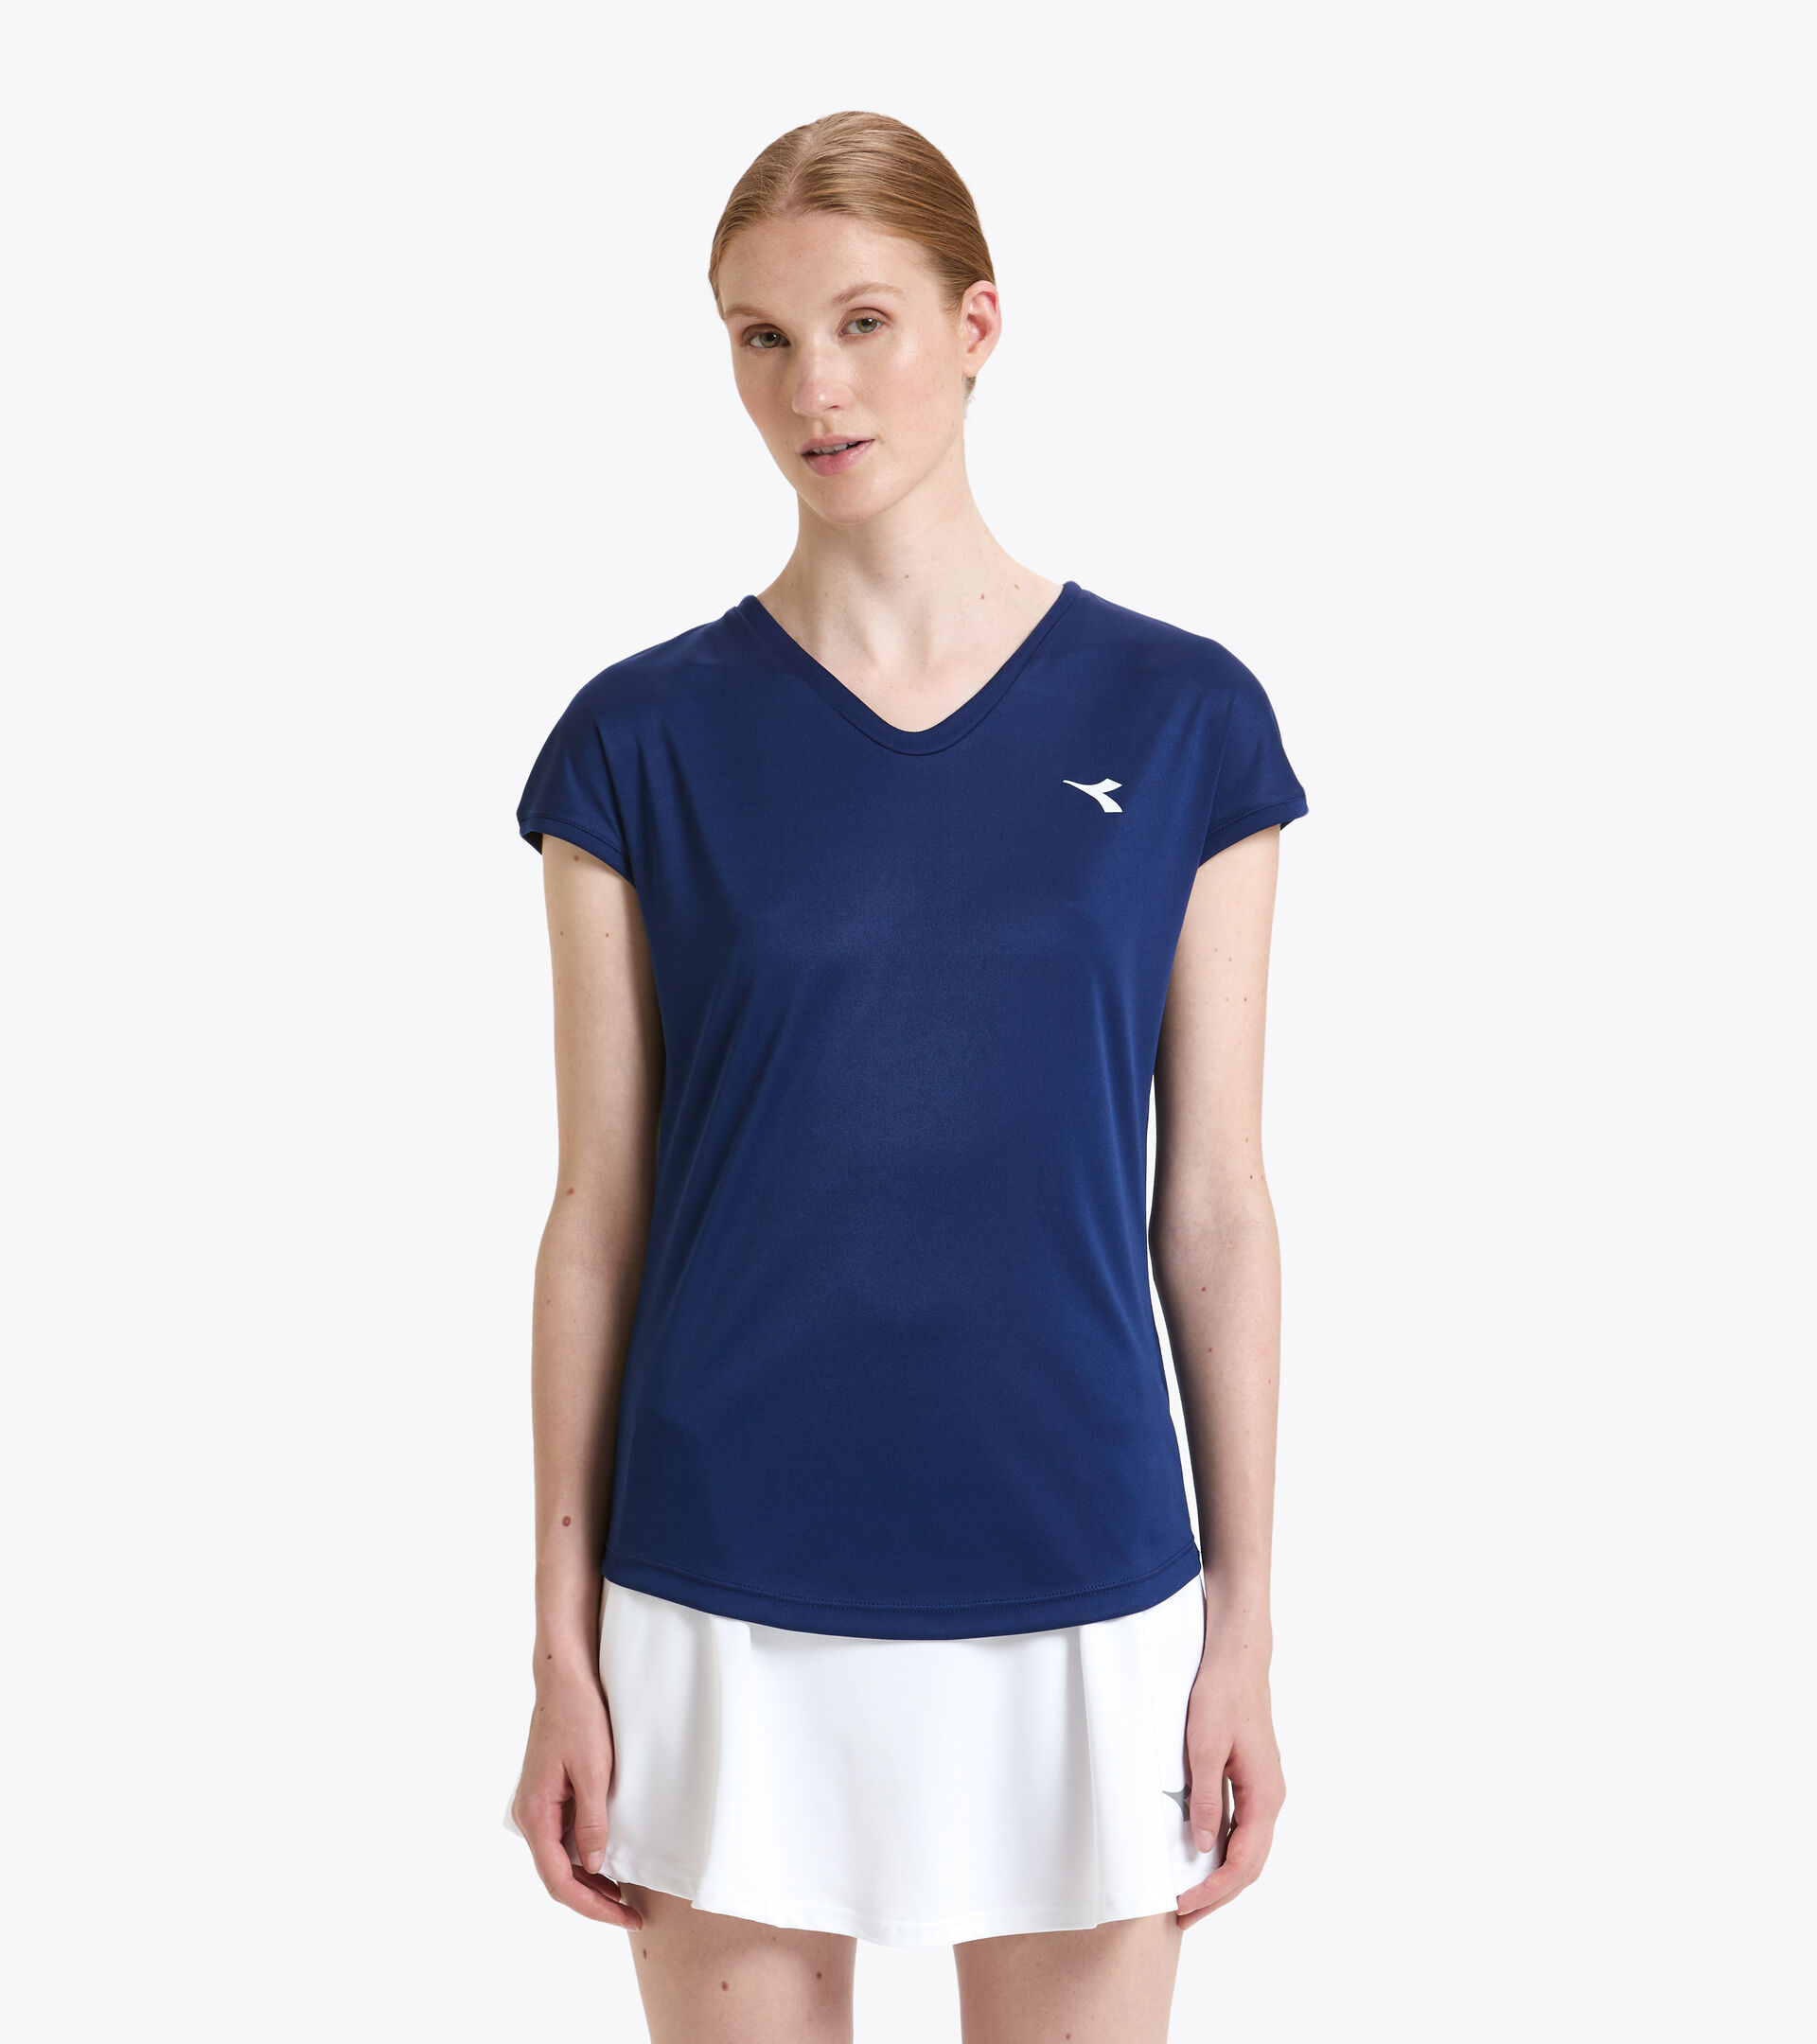 Tennis-T-Shirt - Damen L. T-SHIRT TEAM GUTBLAU - Diadora